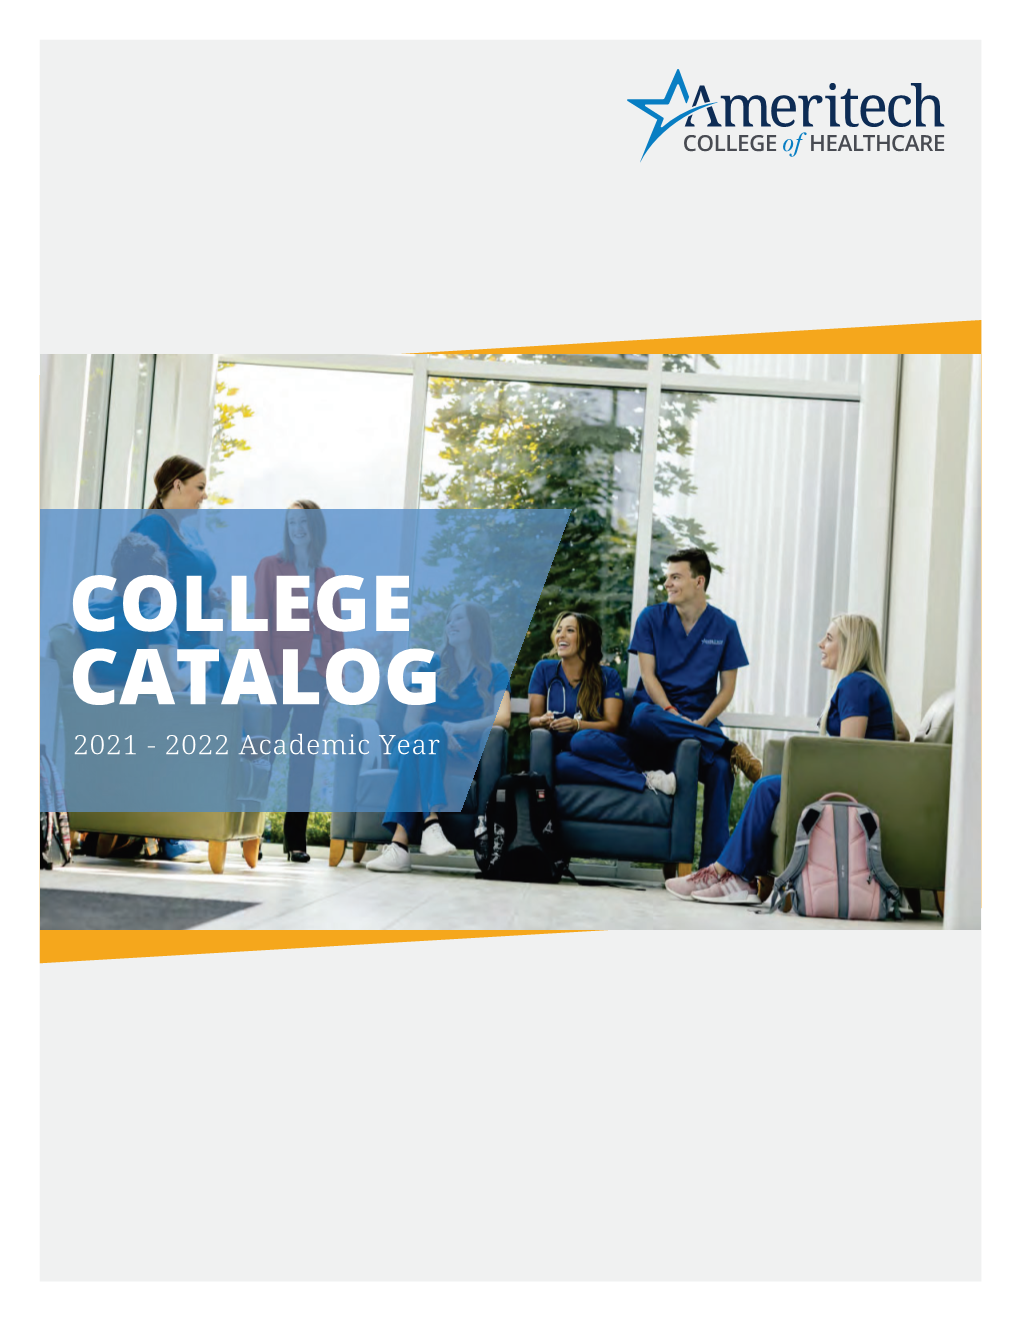 College Catalog